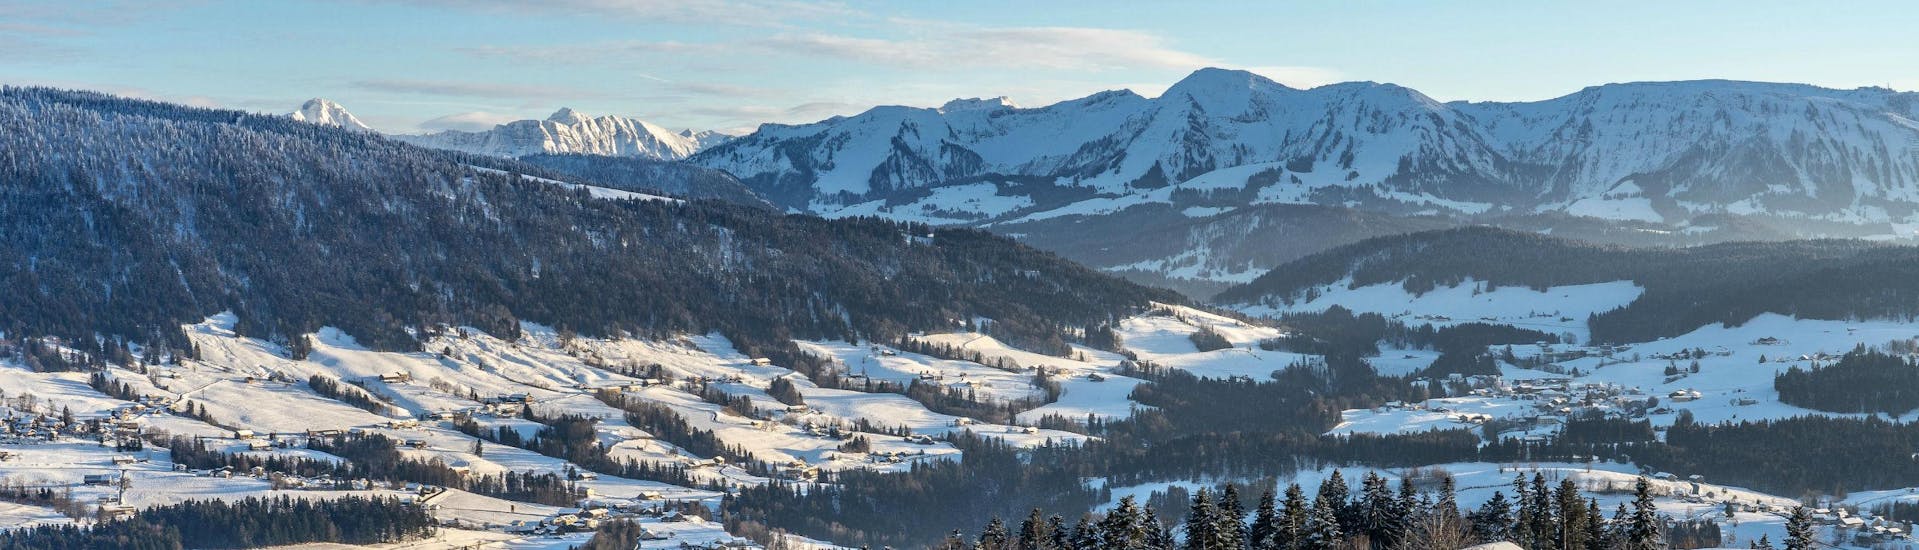 Ein Blick auf das malerische Skigebiet Oberstaufen, wo örtliche Skischulen Skikurse für alle Erfahrungsstufen anbieten.